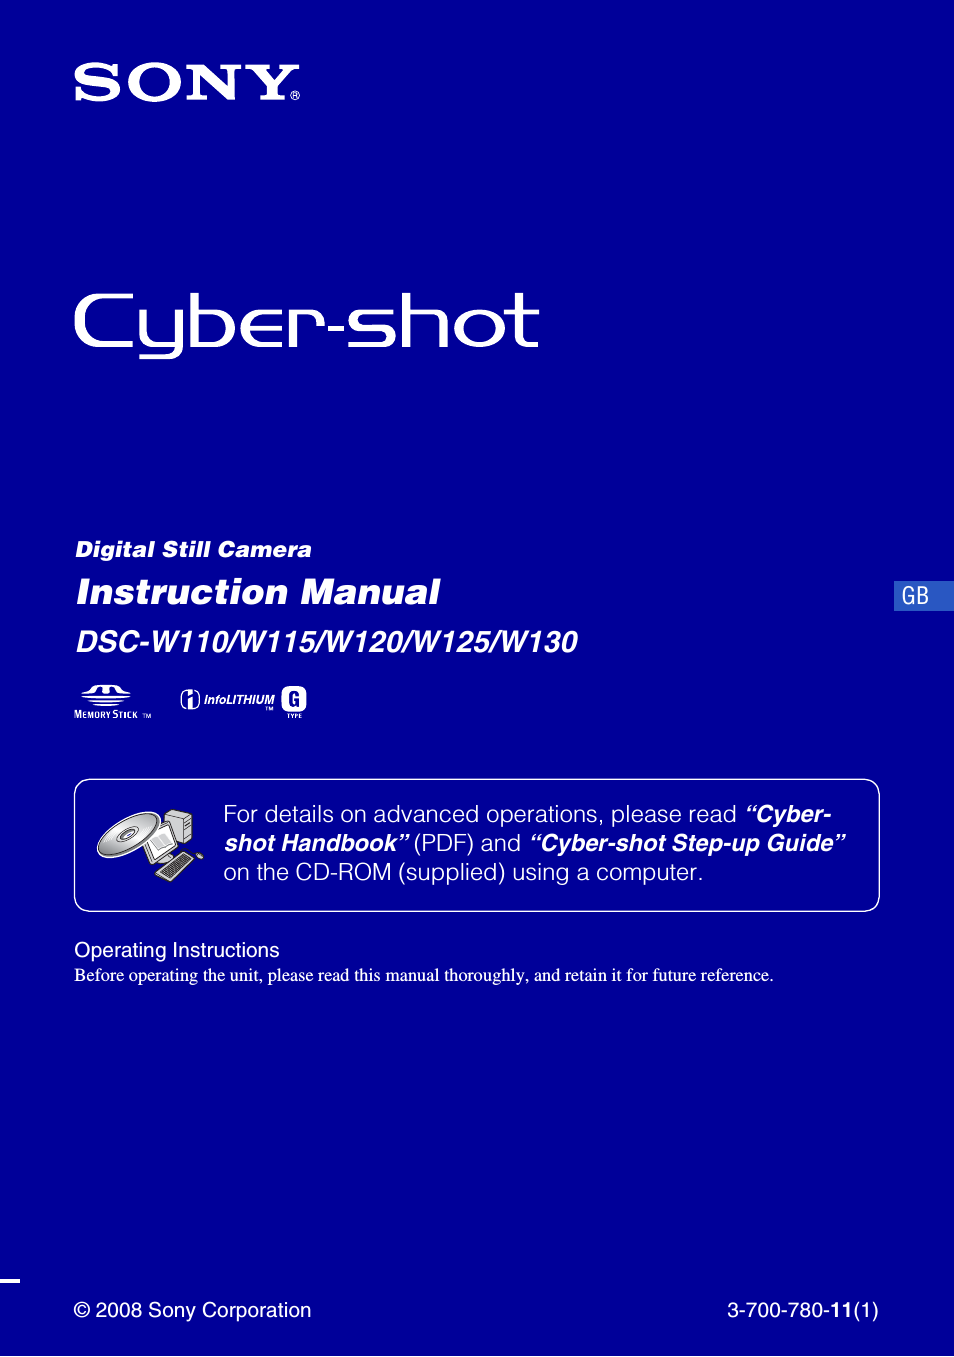 Cyber-shot DSC-W110